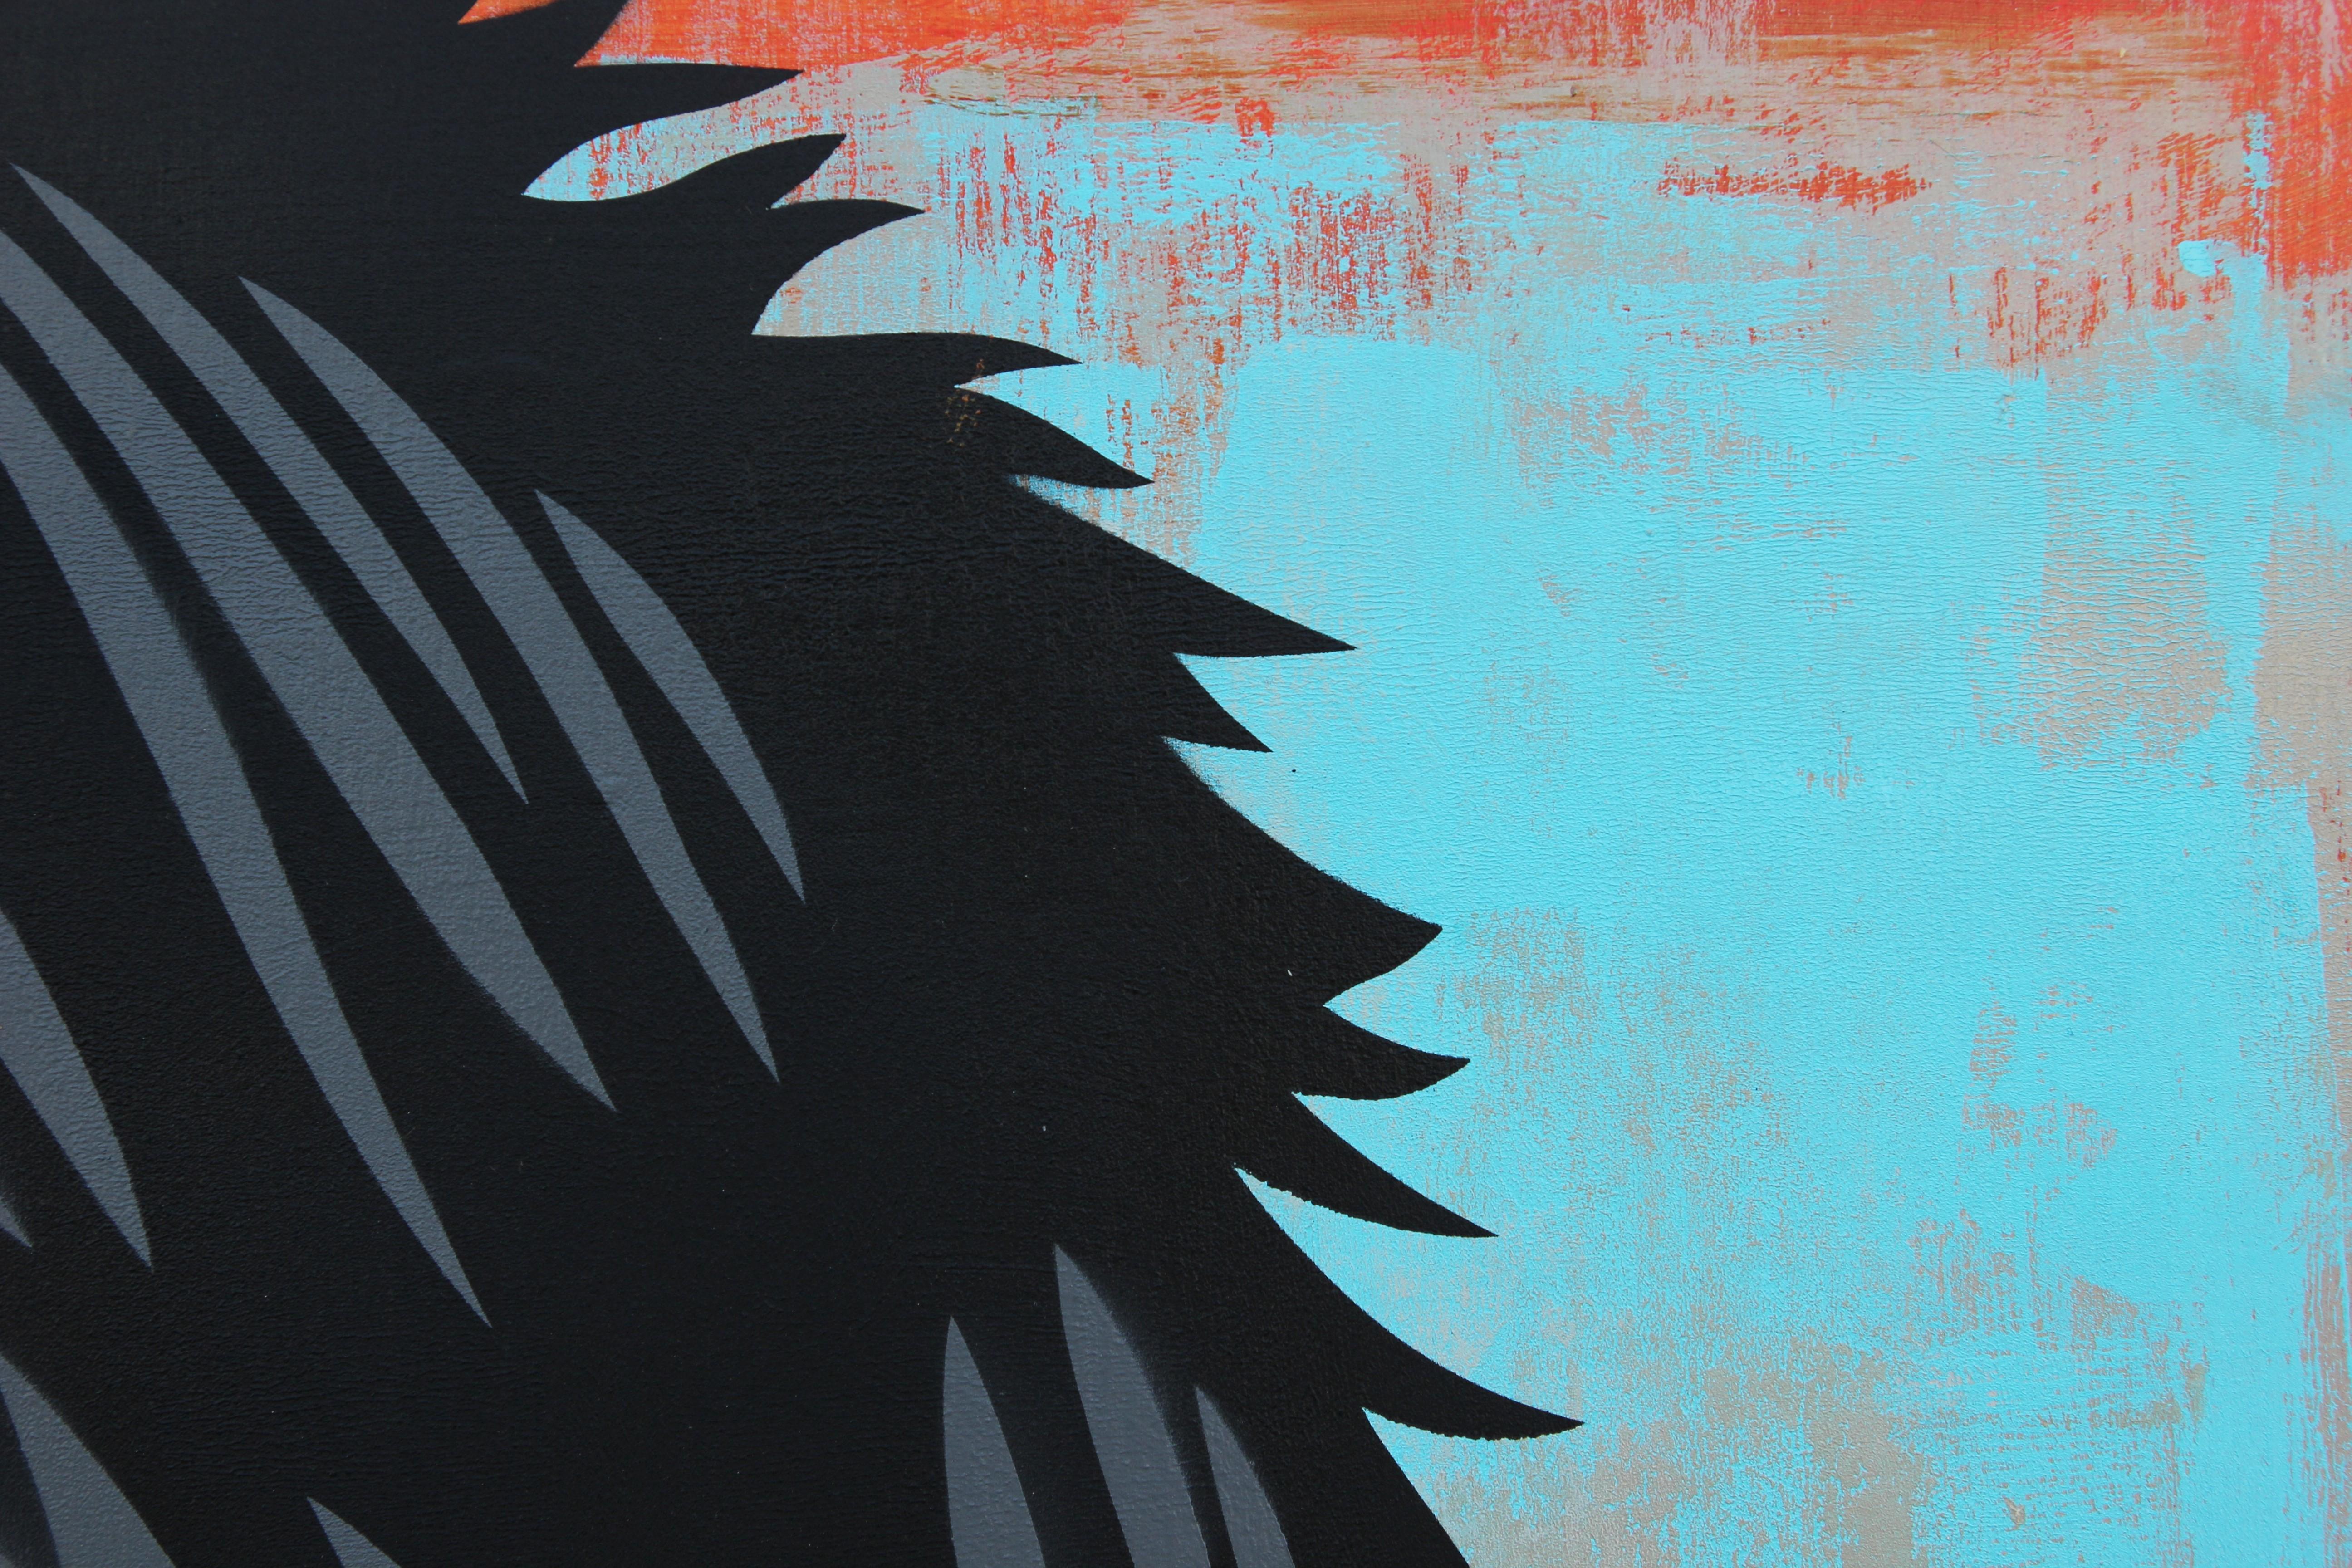 Abstraktes zeitgenössisches Gemälde des Radiohead-Sängers Thom Yorke des Künstlers Ed Booth aus Austin, Texas. Großes schwarzes und graues vektorisiertes Porträtgemälde von Yorke vor einem blaugrünen und roten Pinselhintergrund. Signiert vom